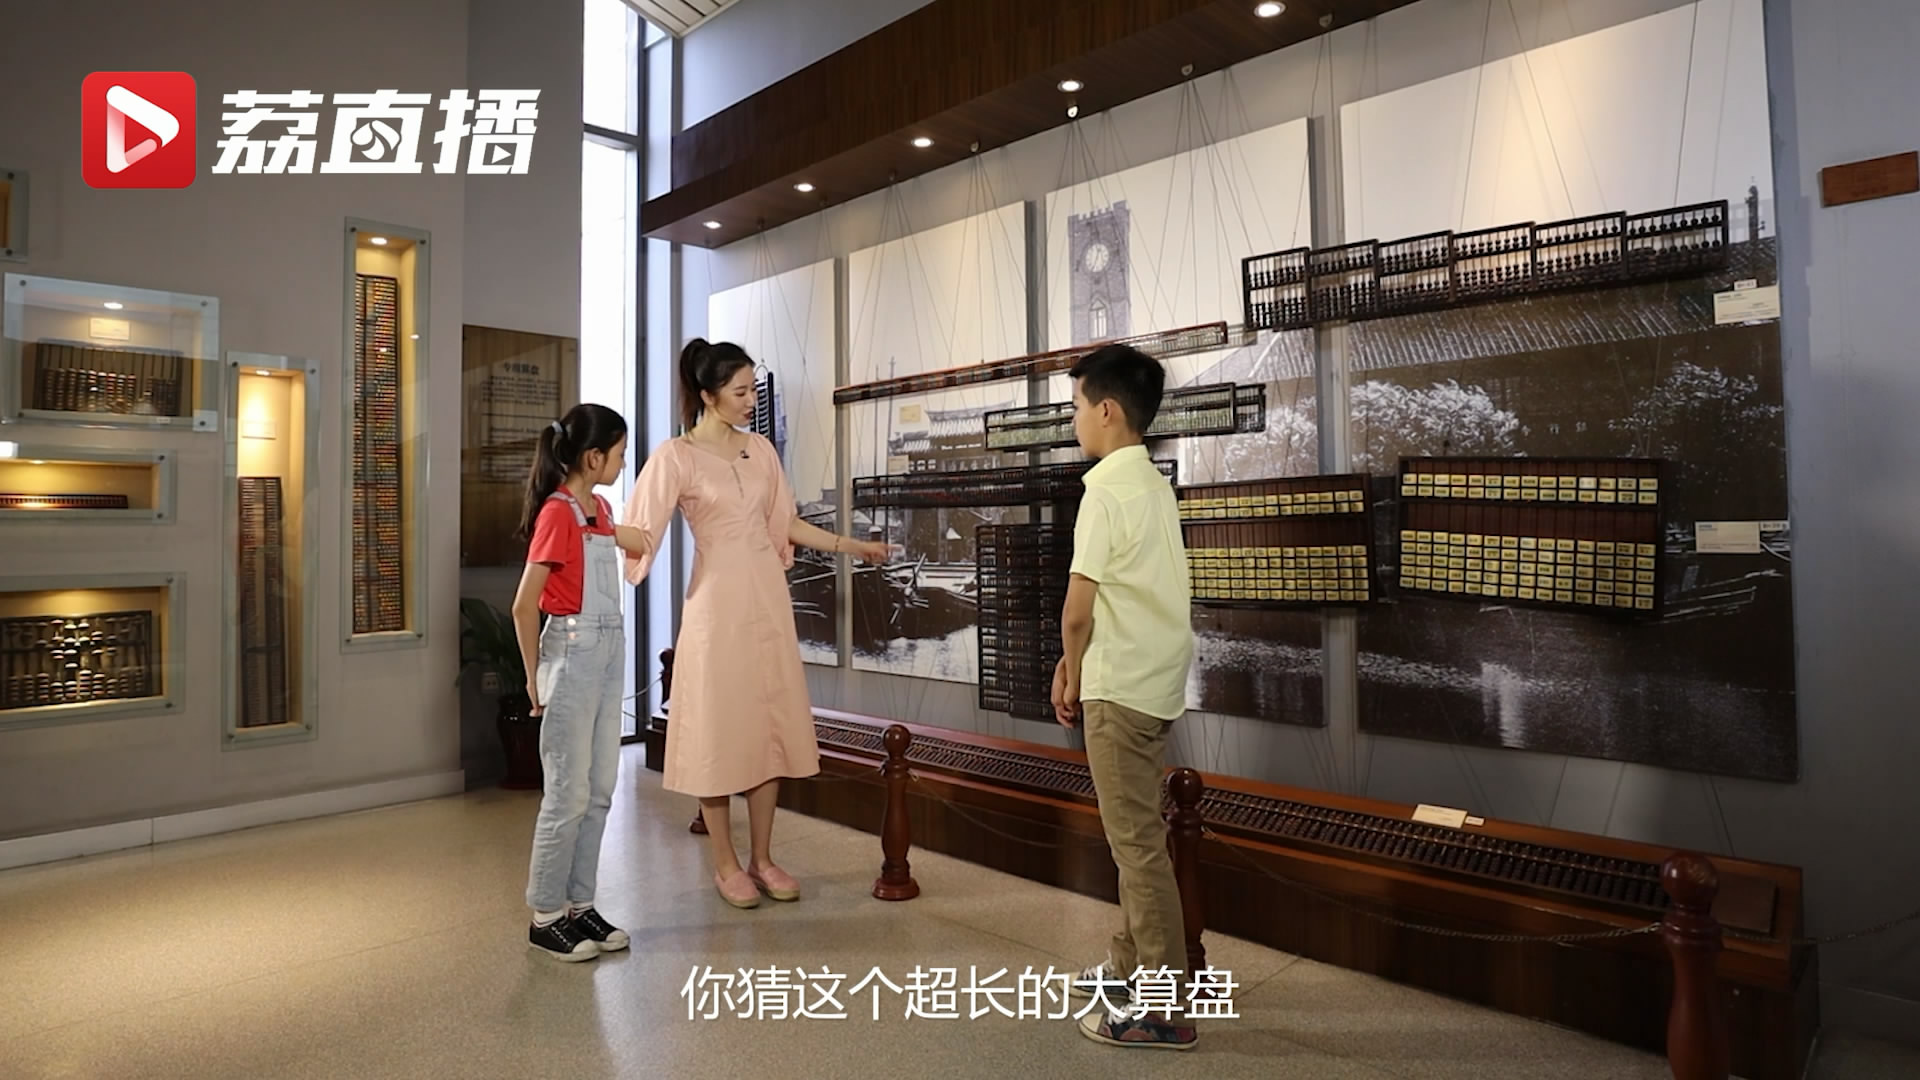 游遍江苏丨这个4米长的超大算盘，可供7个人同时拨打